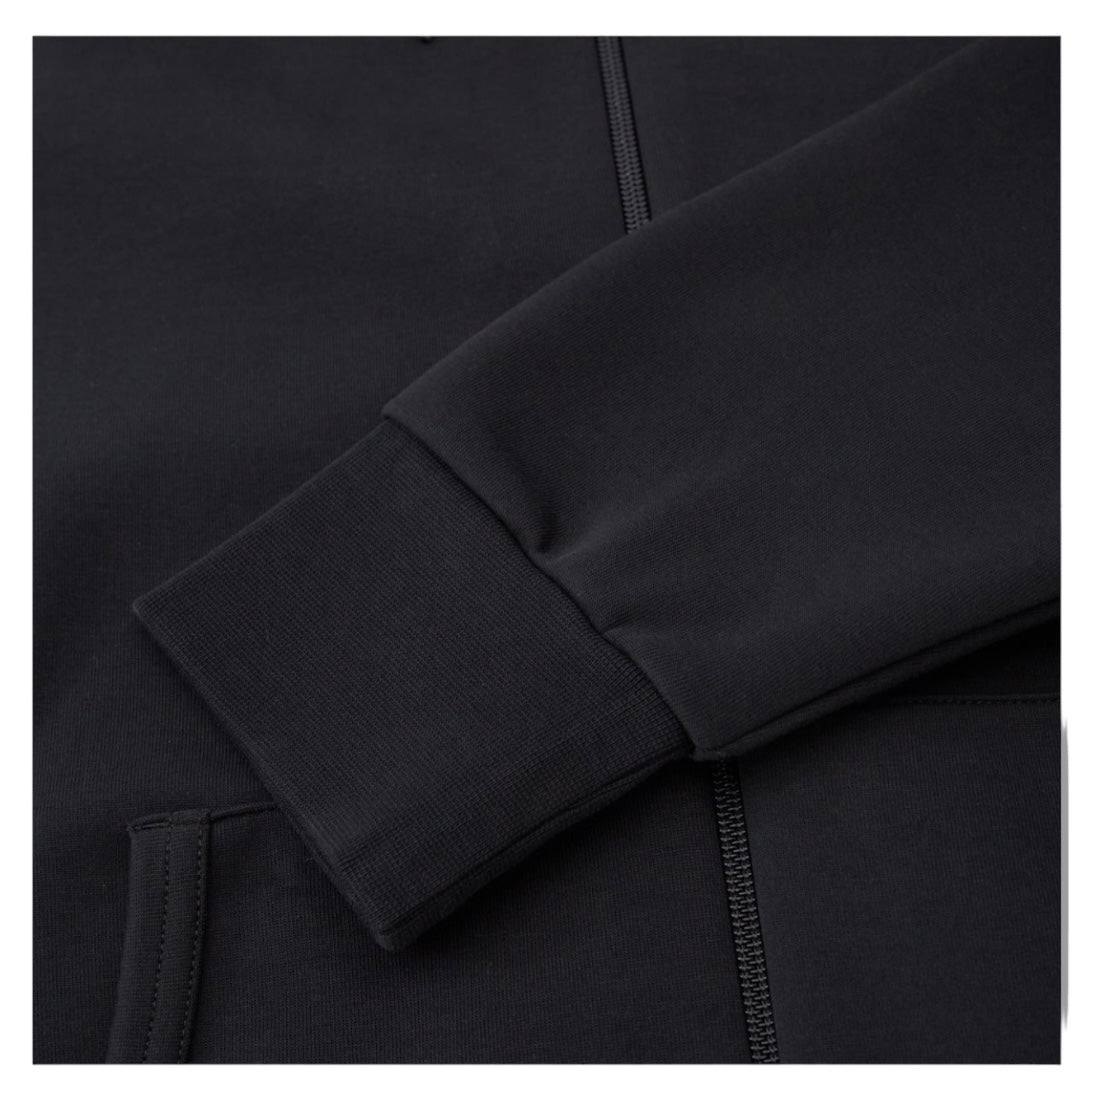 Polo Ralph Lauren tech zip hoodie